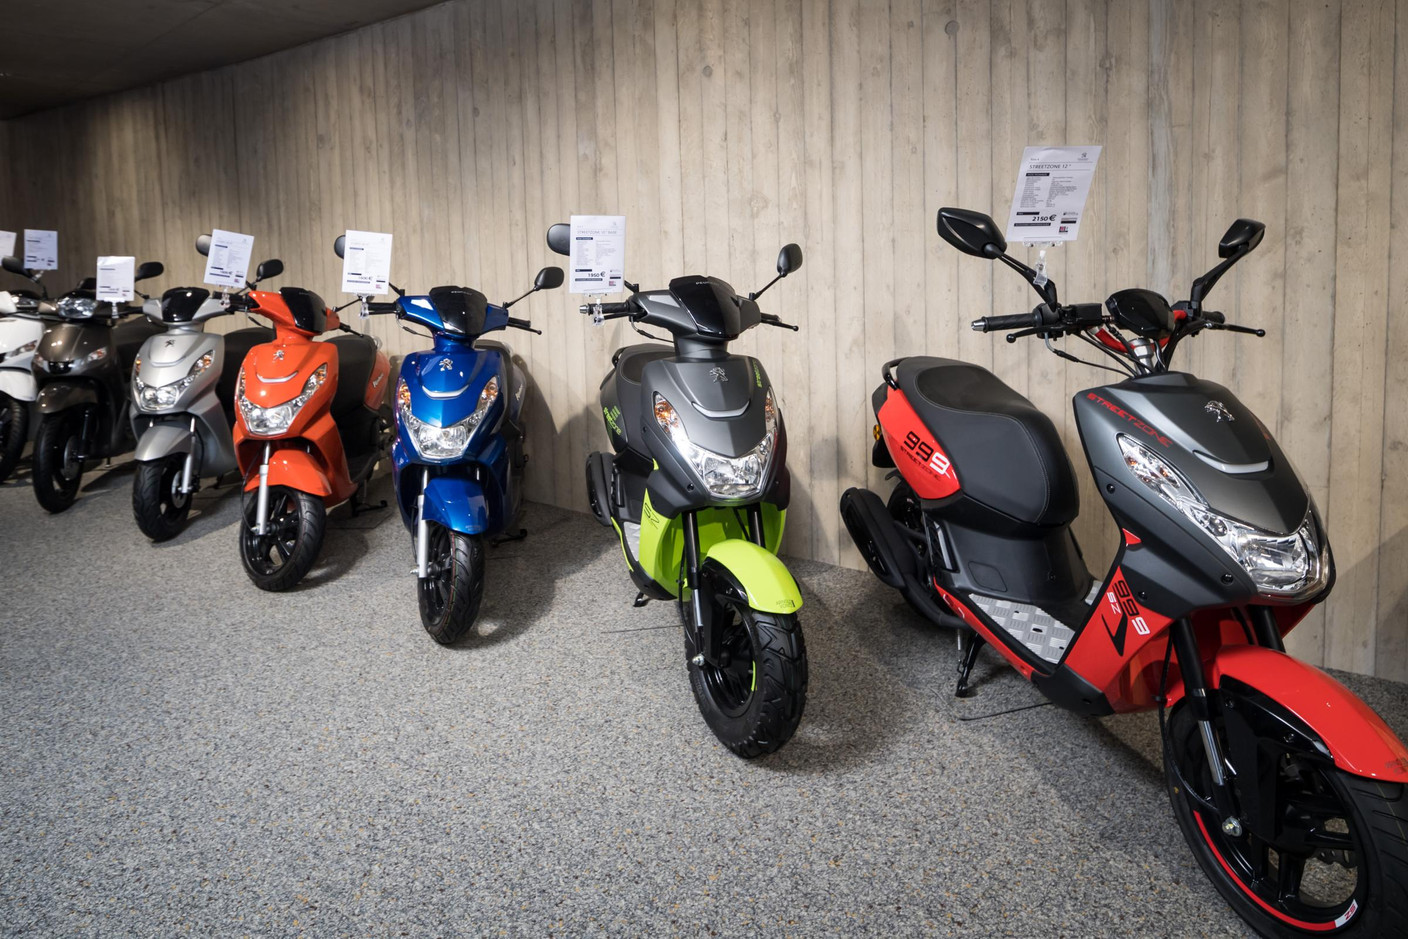 Les scooters Peugeot sont commercialisés depuis 1958 par le groupe Kontz. (Photo: Nader Ghavami)